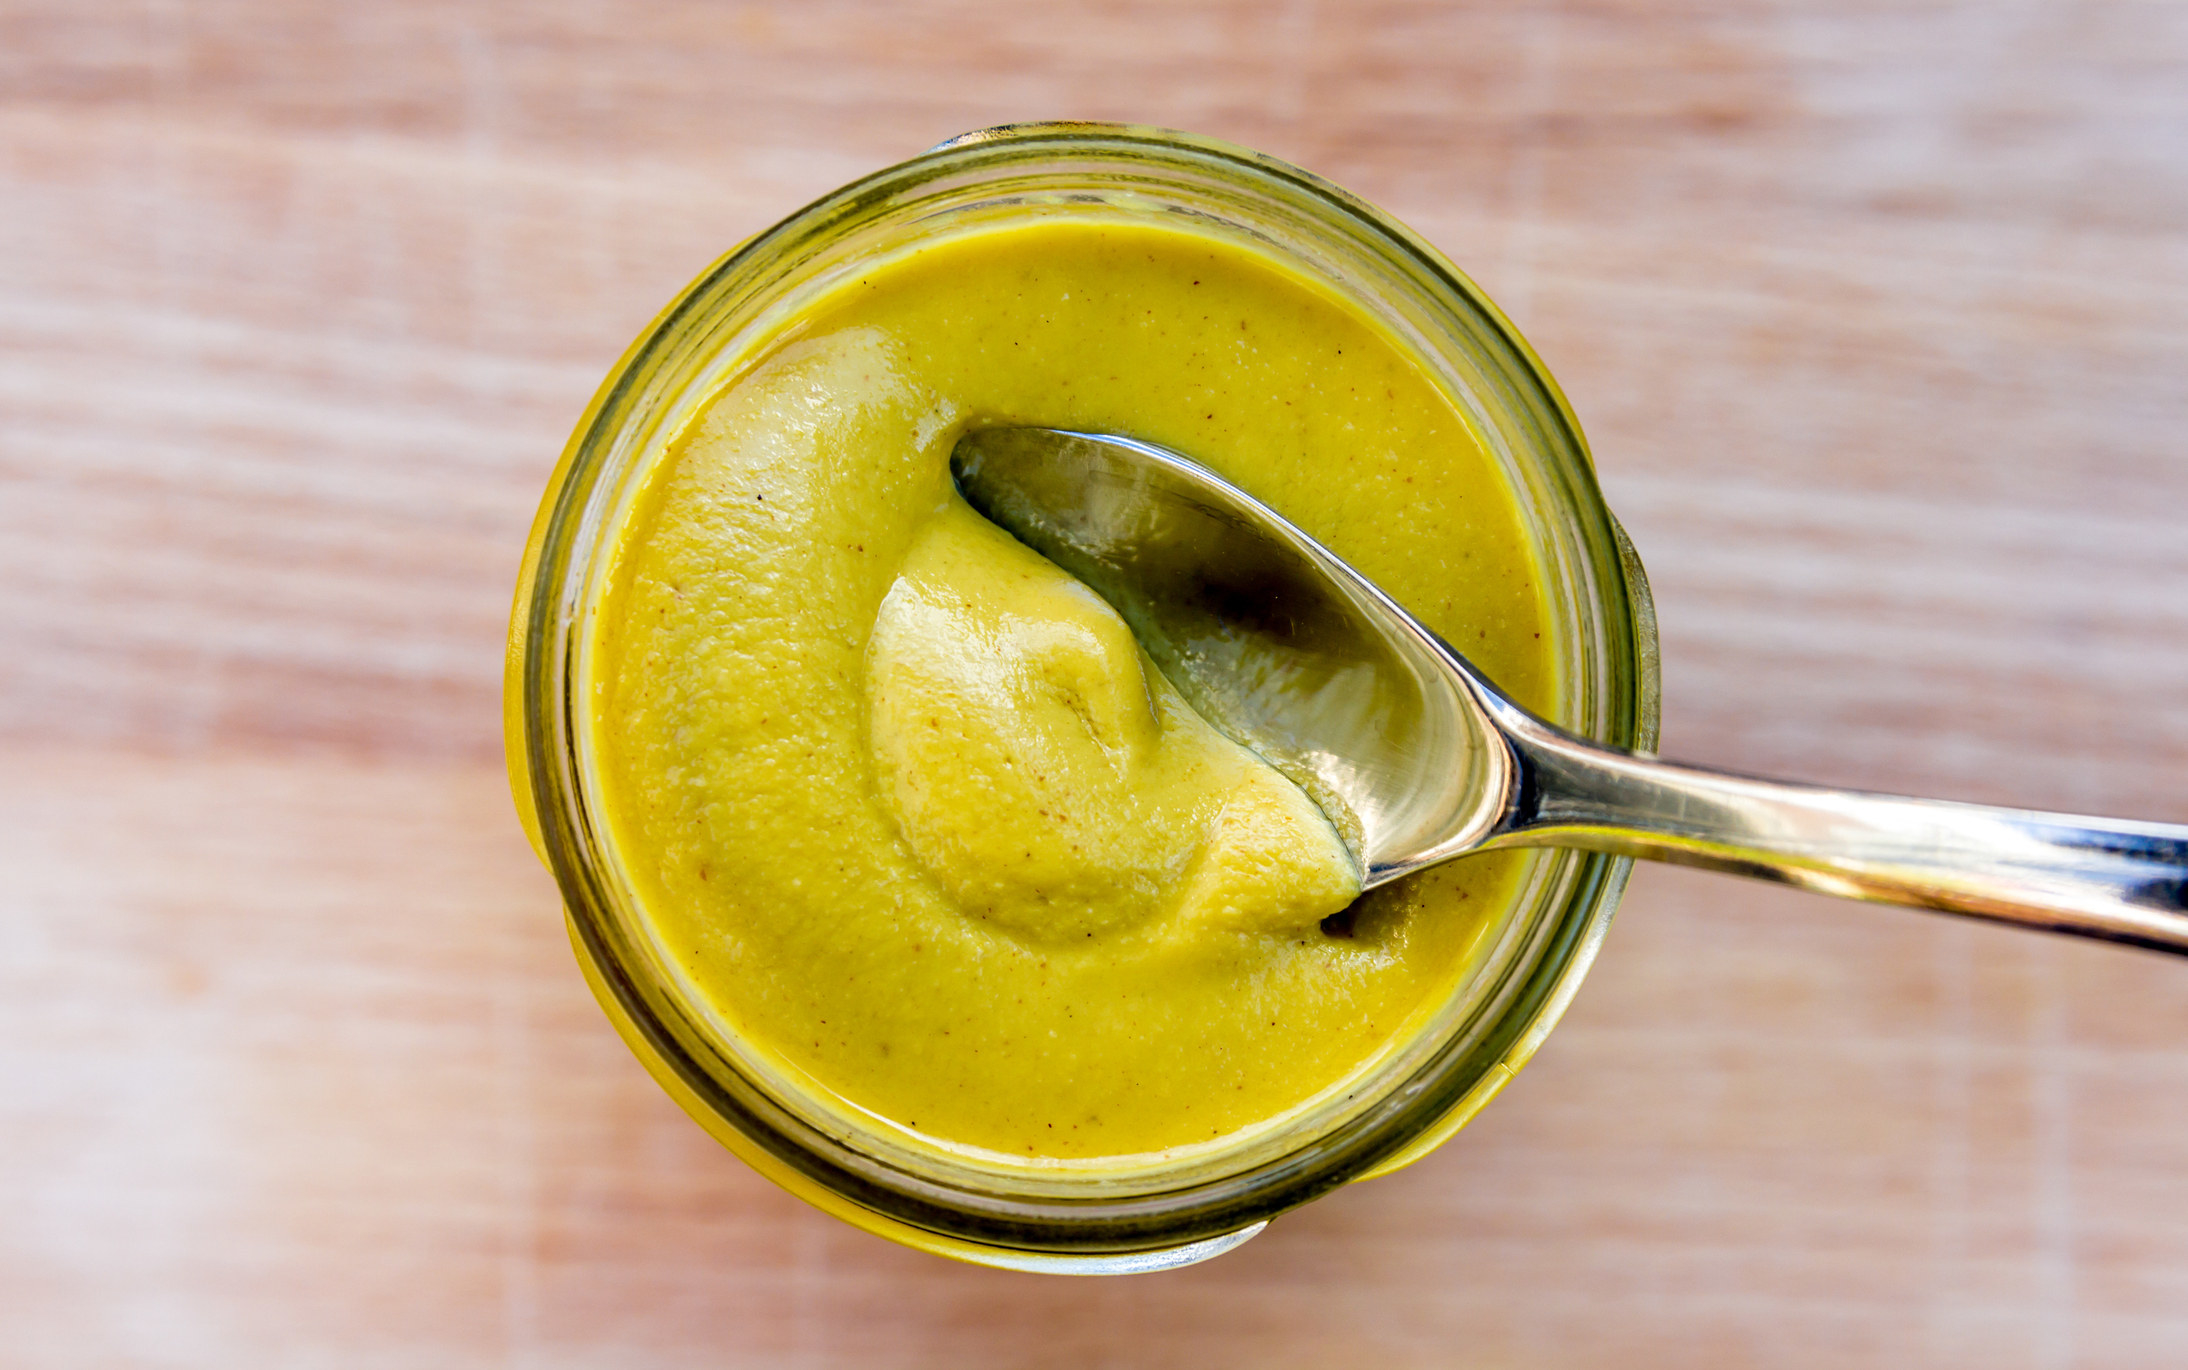 A spoon in a jar of mustard.